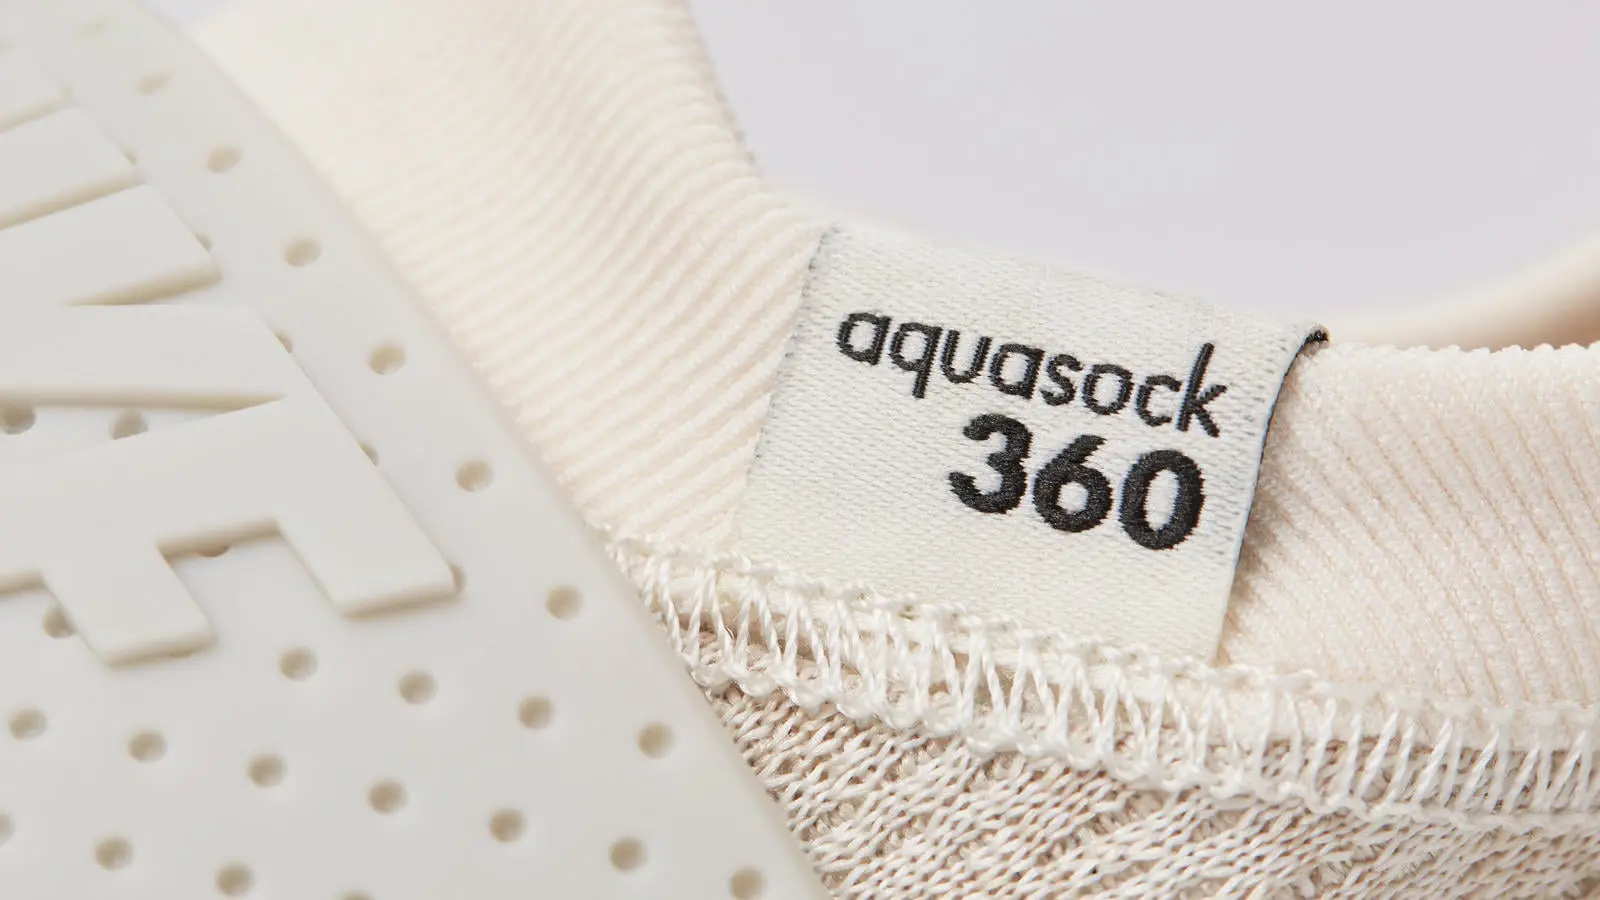 NikeLab AquaSock360 04